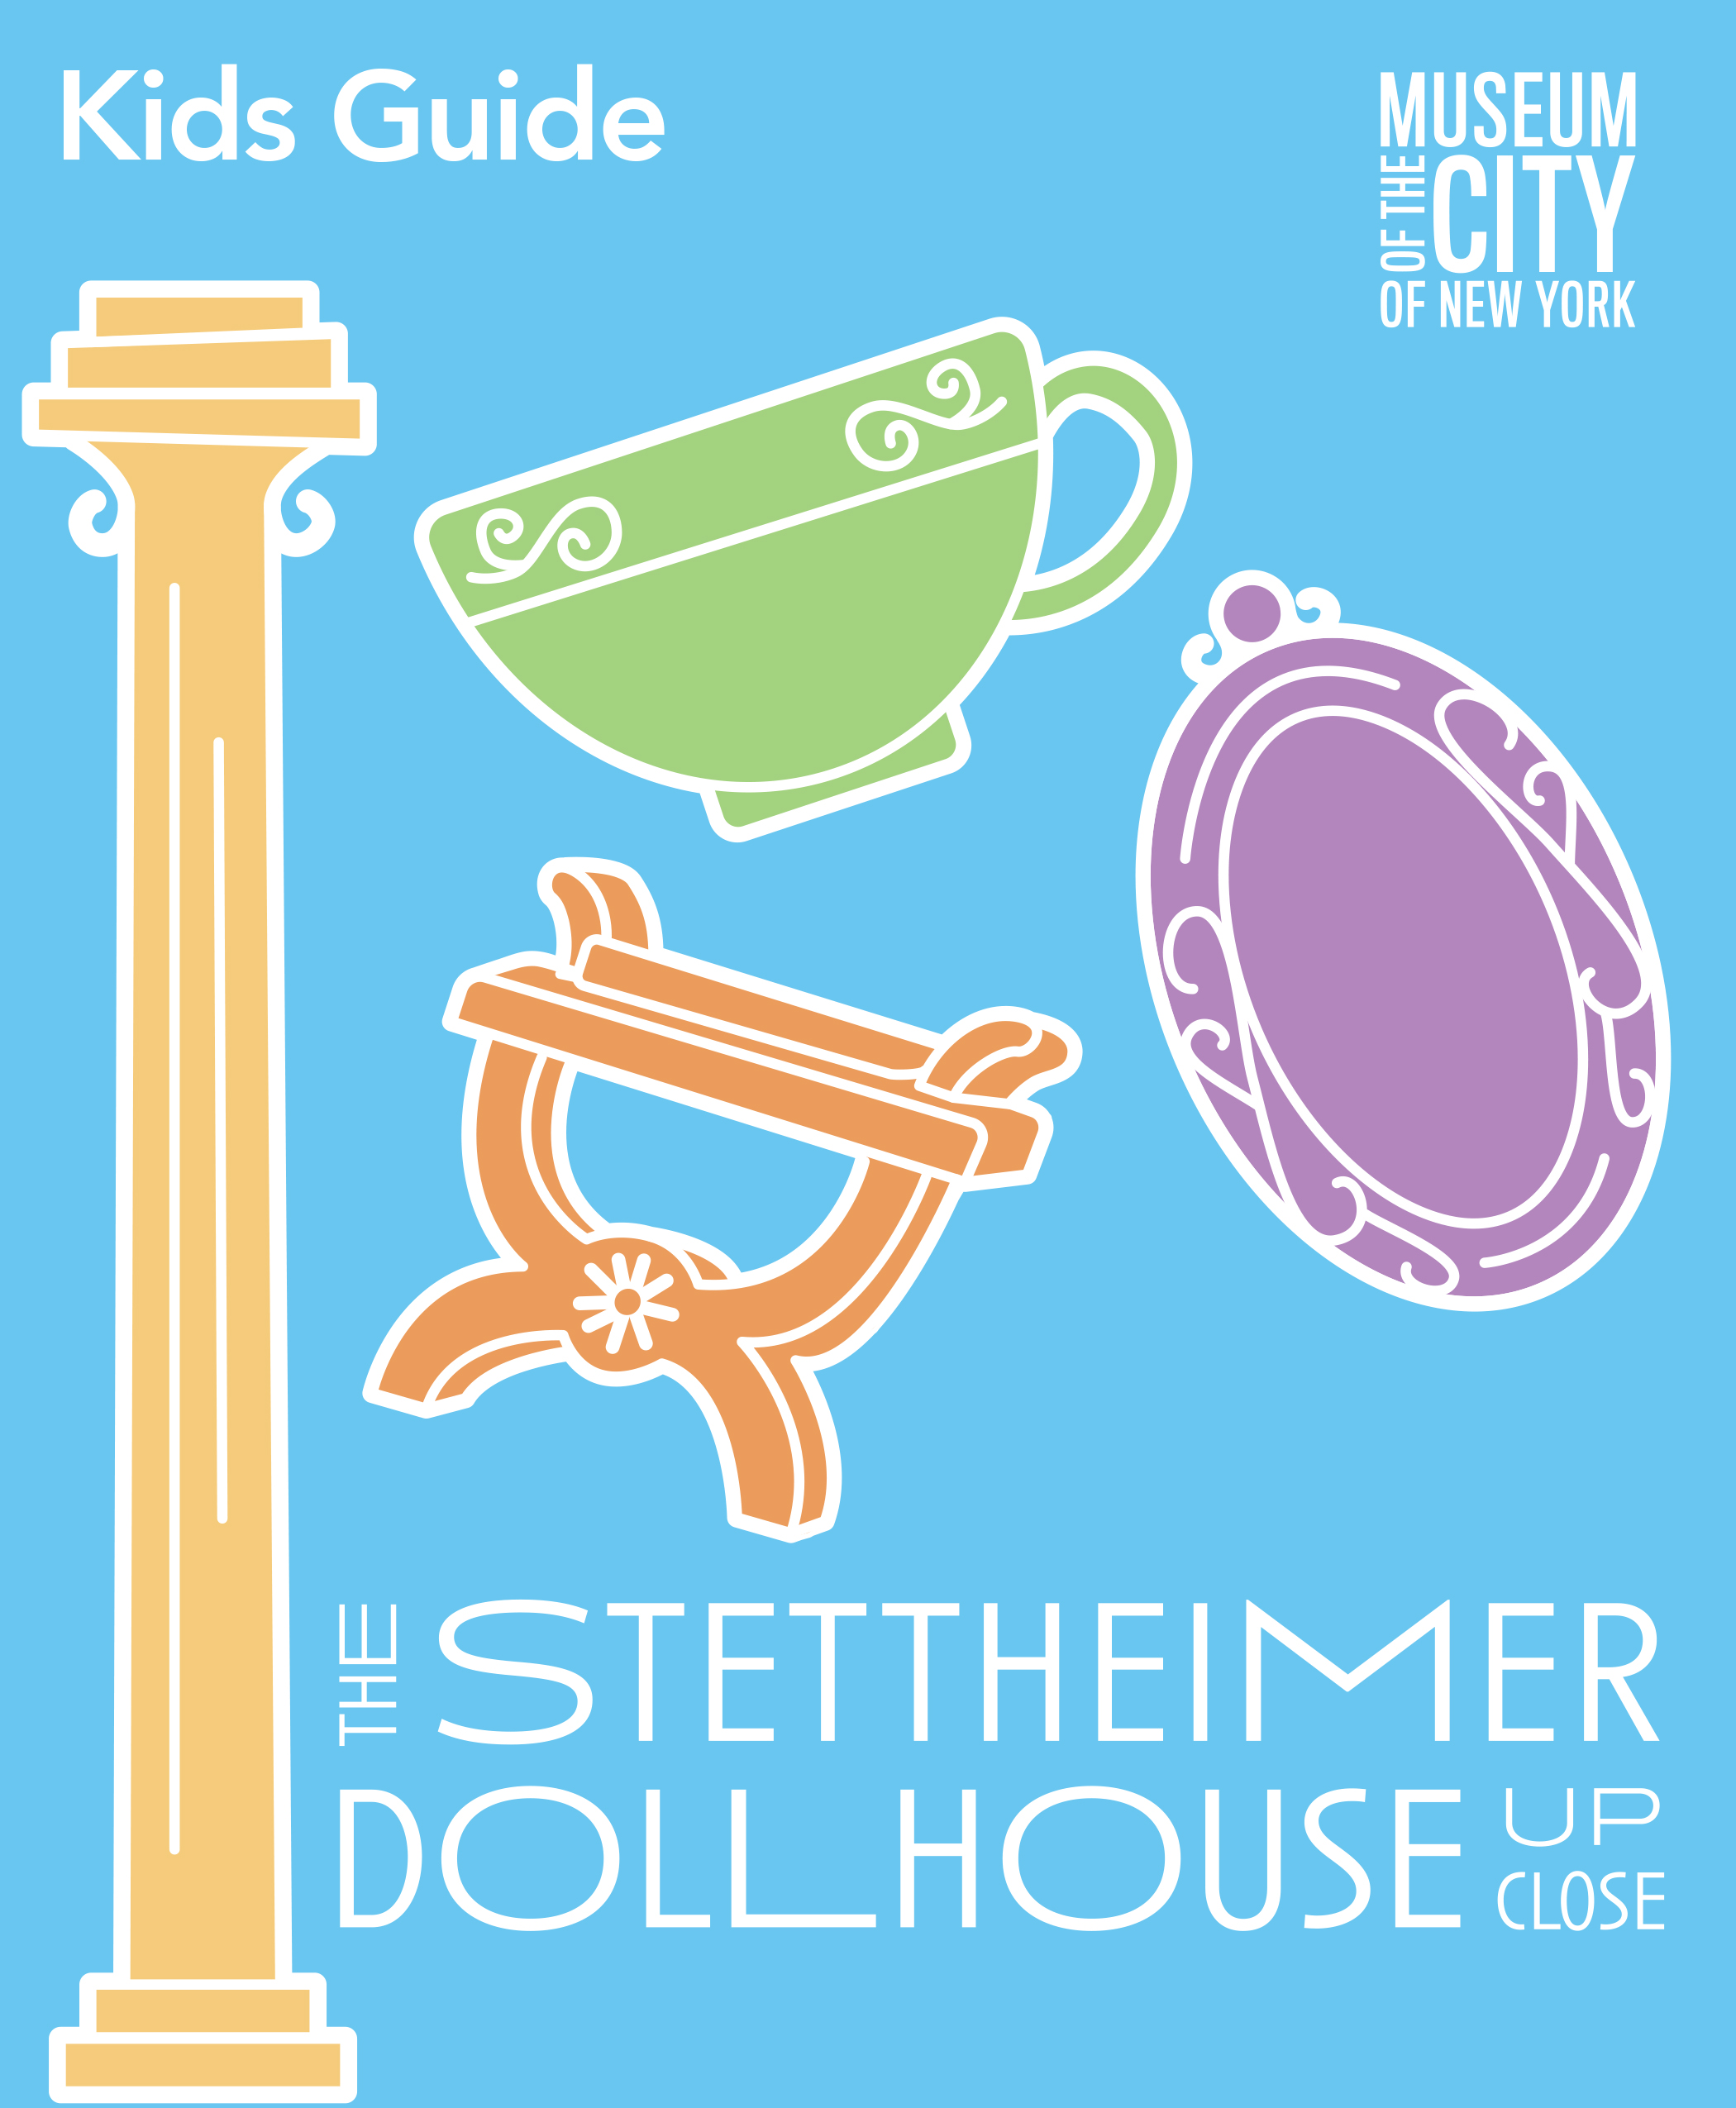 Couverture d'un guide pour enfants, avec un graphique dessinant une colonne, une chaise, une tasse et une assiette de la maison de poupée Stettheimer